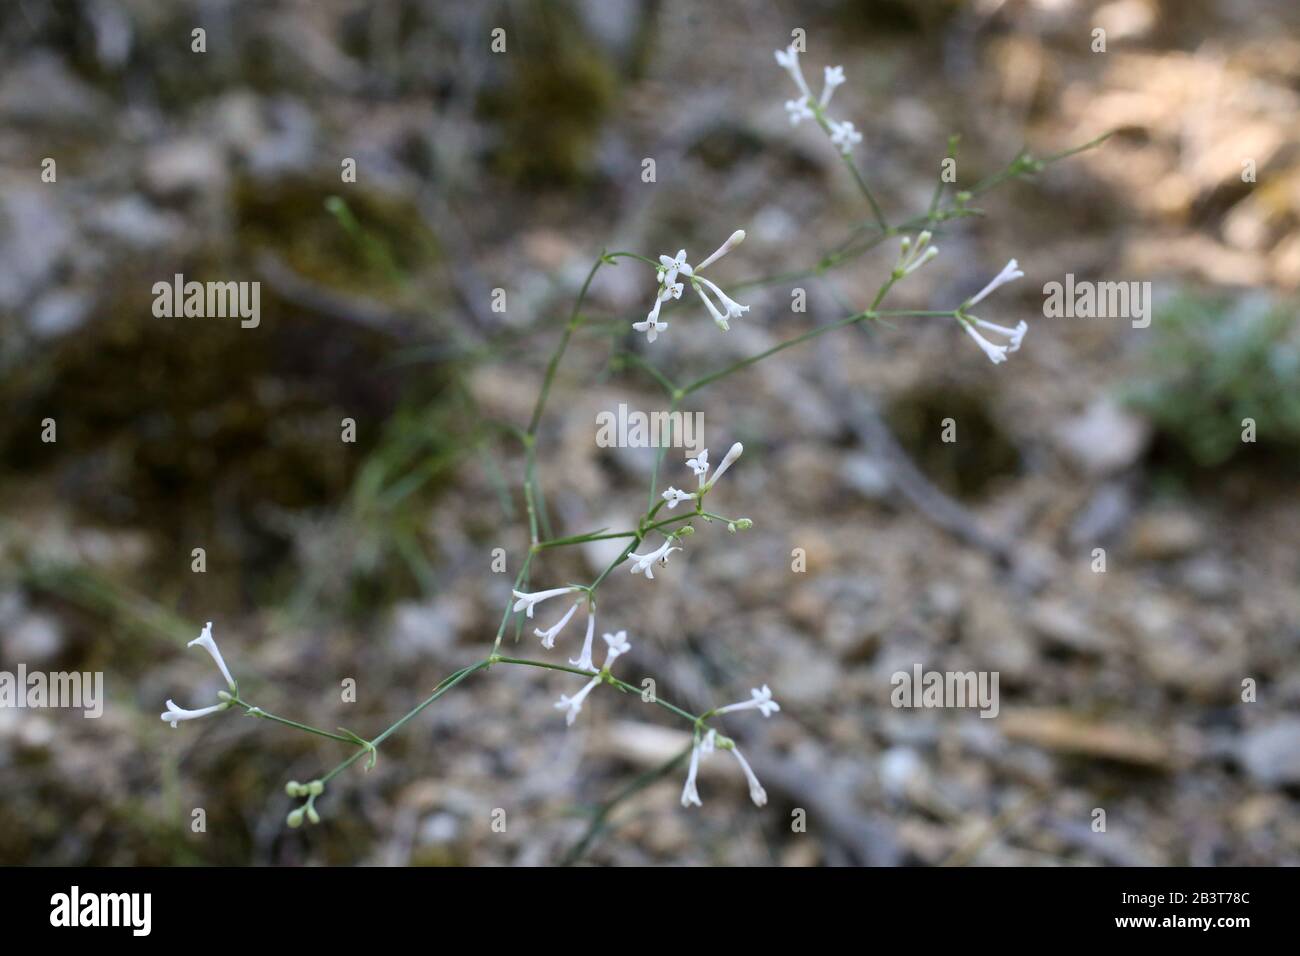 Asperula tenella - Wild plant shot in summer. Stock Photo